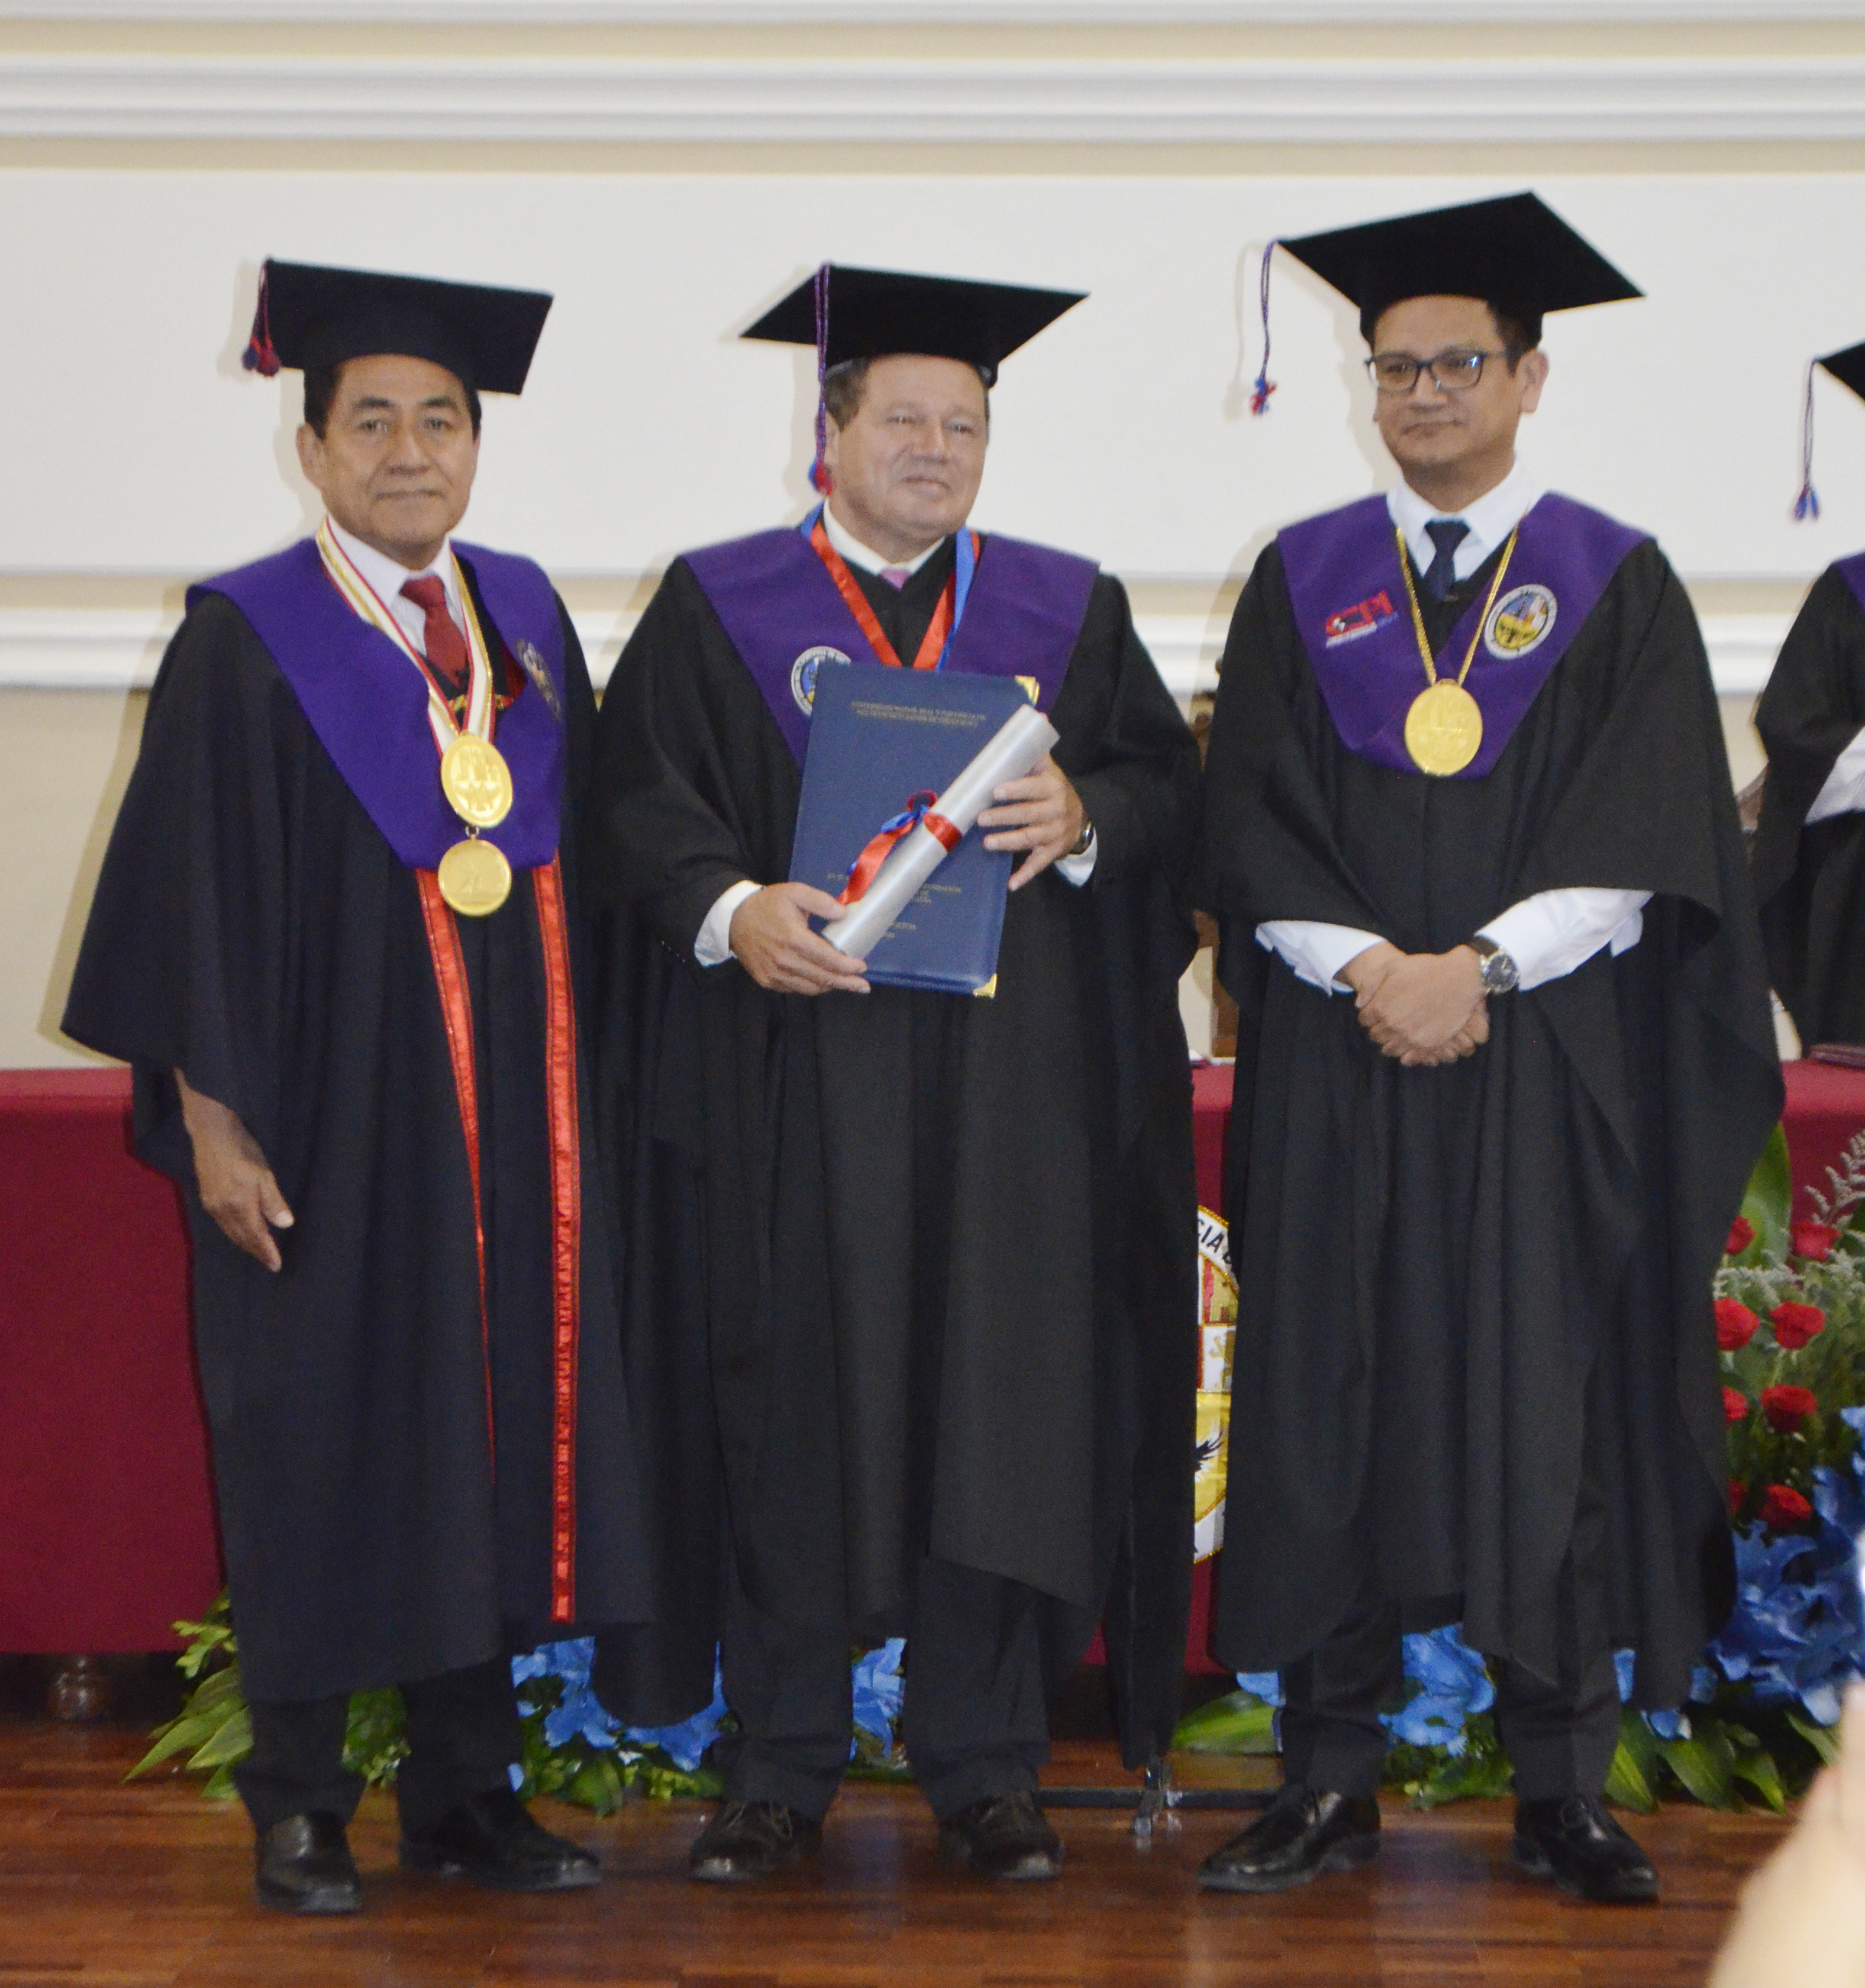 La Universidad entrega el título de Doctor Honoris Causa al director de Helvetas Bolivia, Richard Rainer Haep